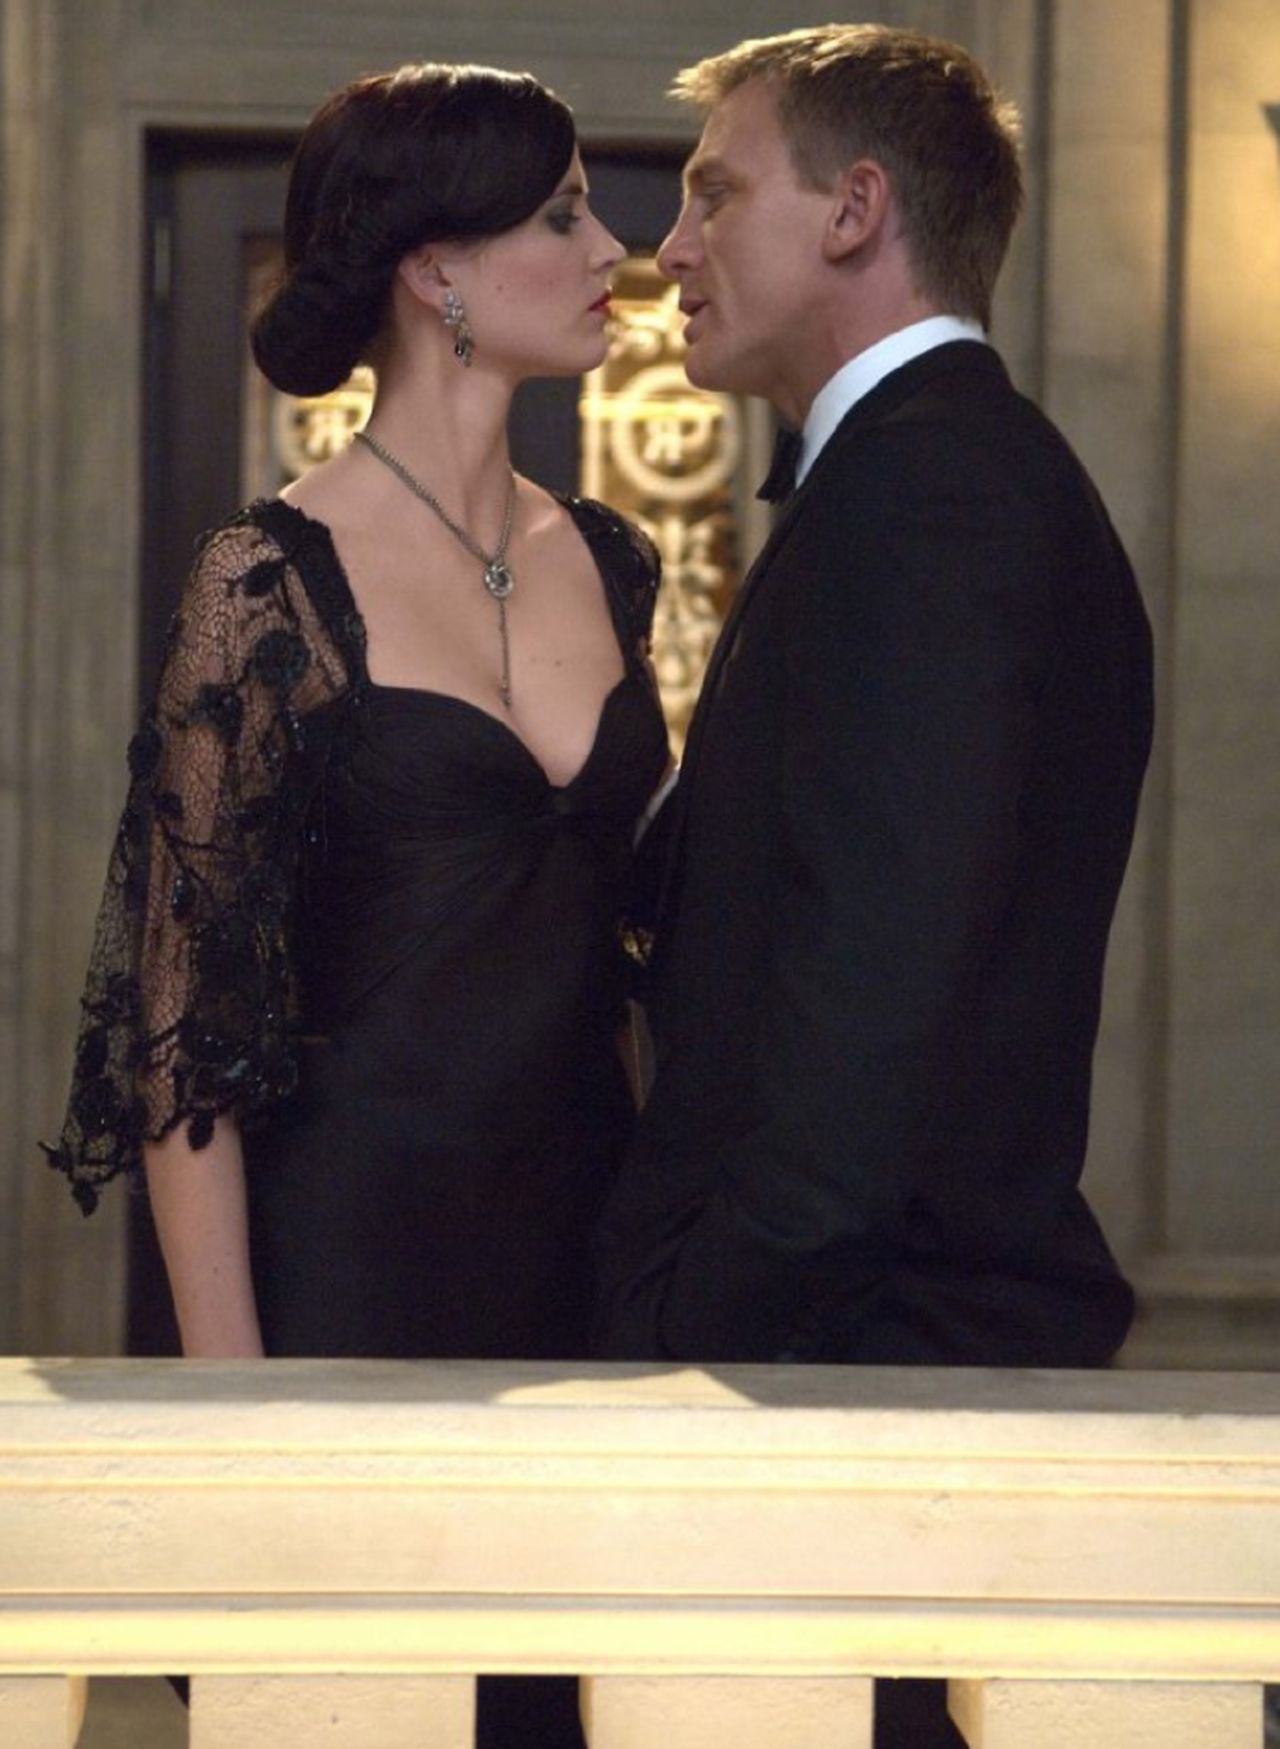 In 2006's "Casino Royale," Daniel Craig's Bond fell for Eva Green's Vesper Lynd.